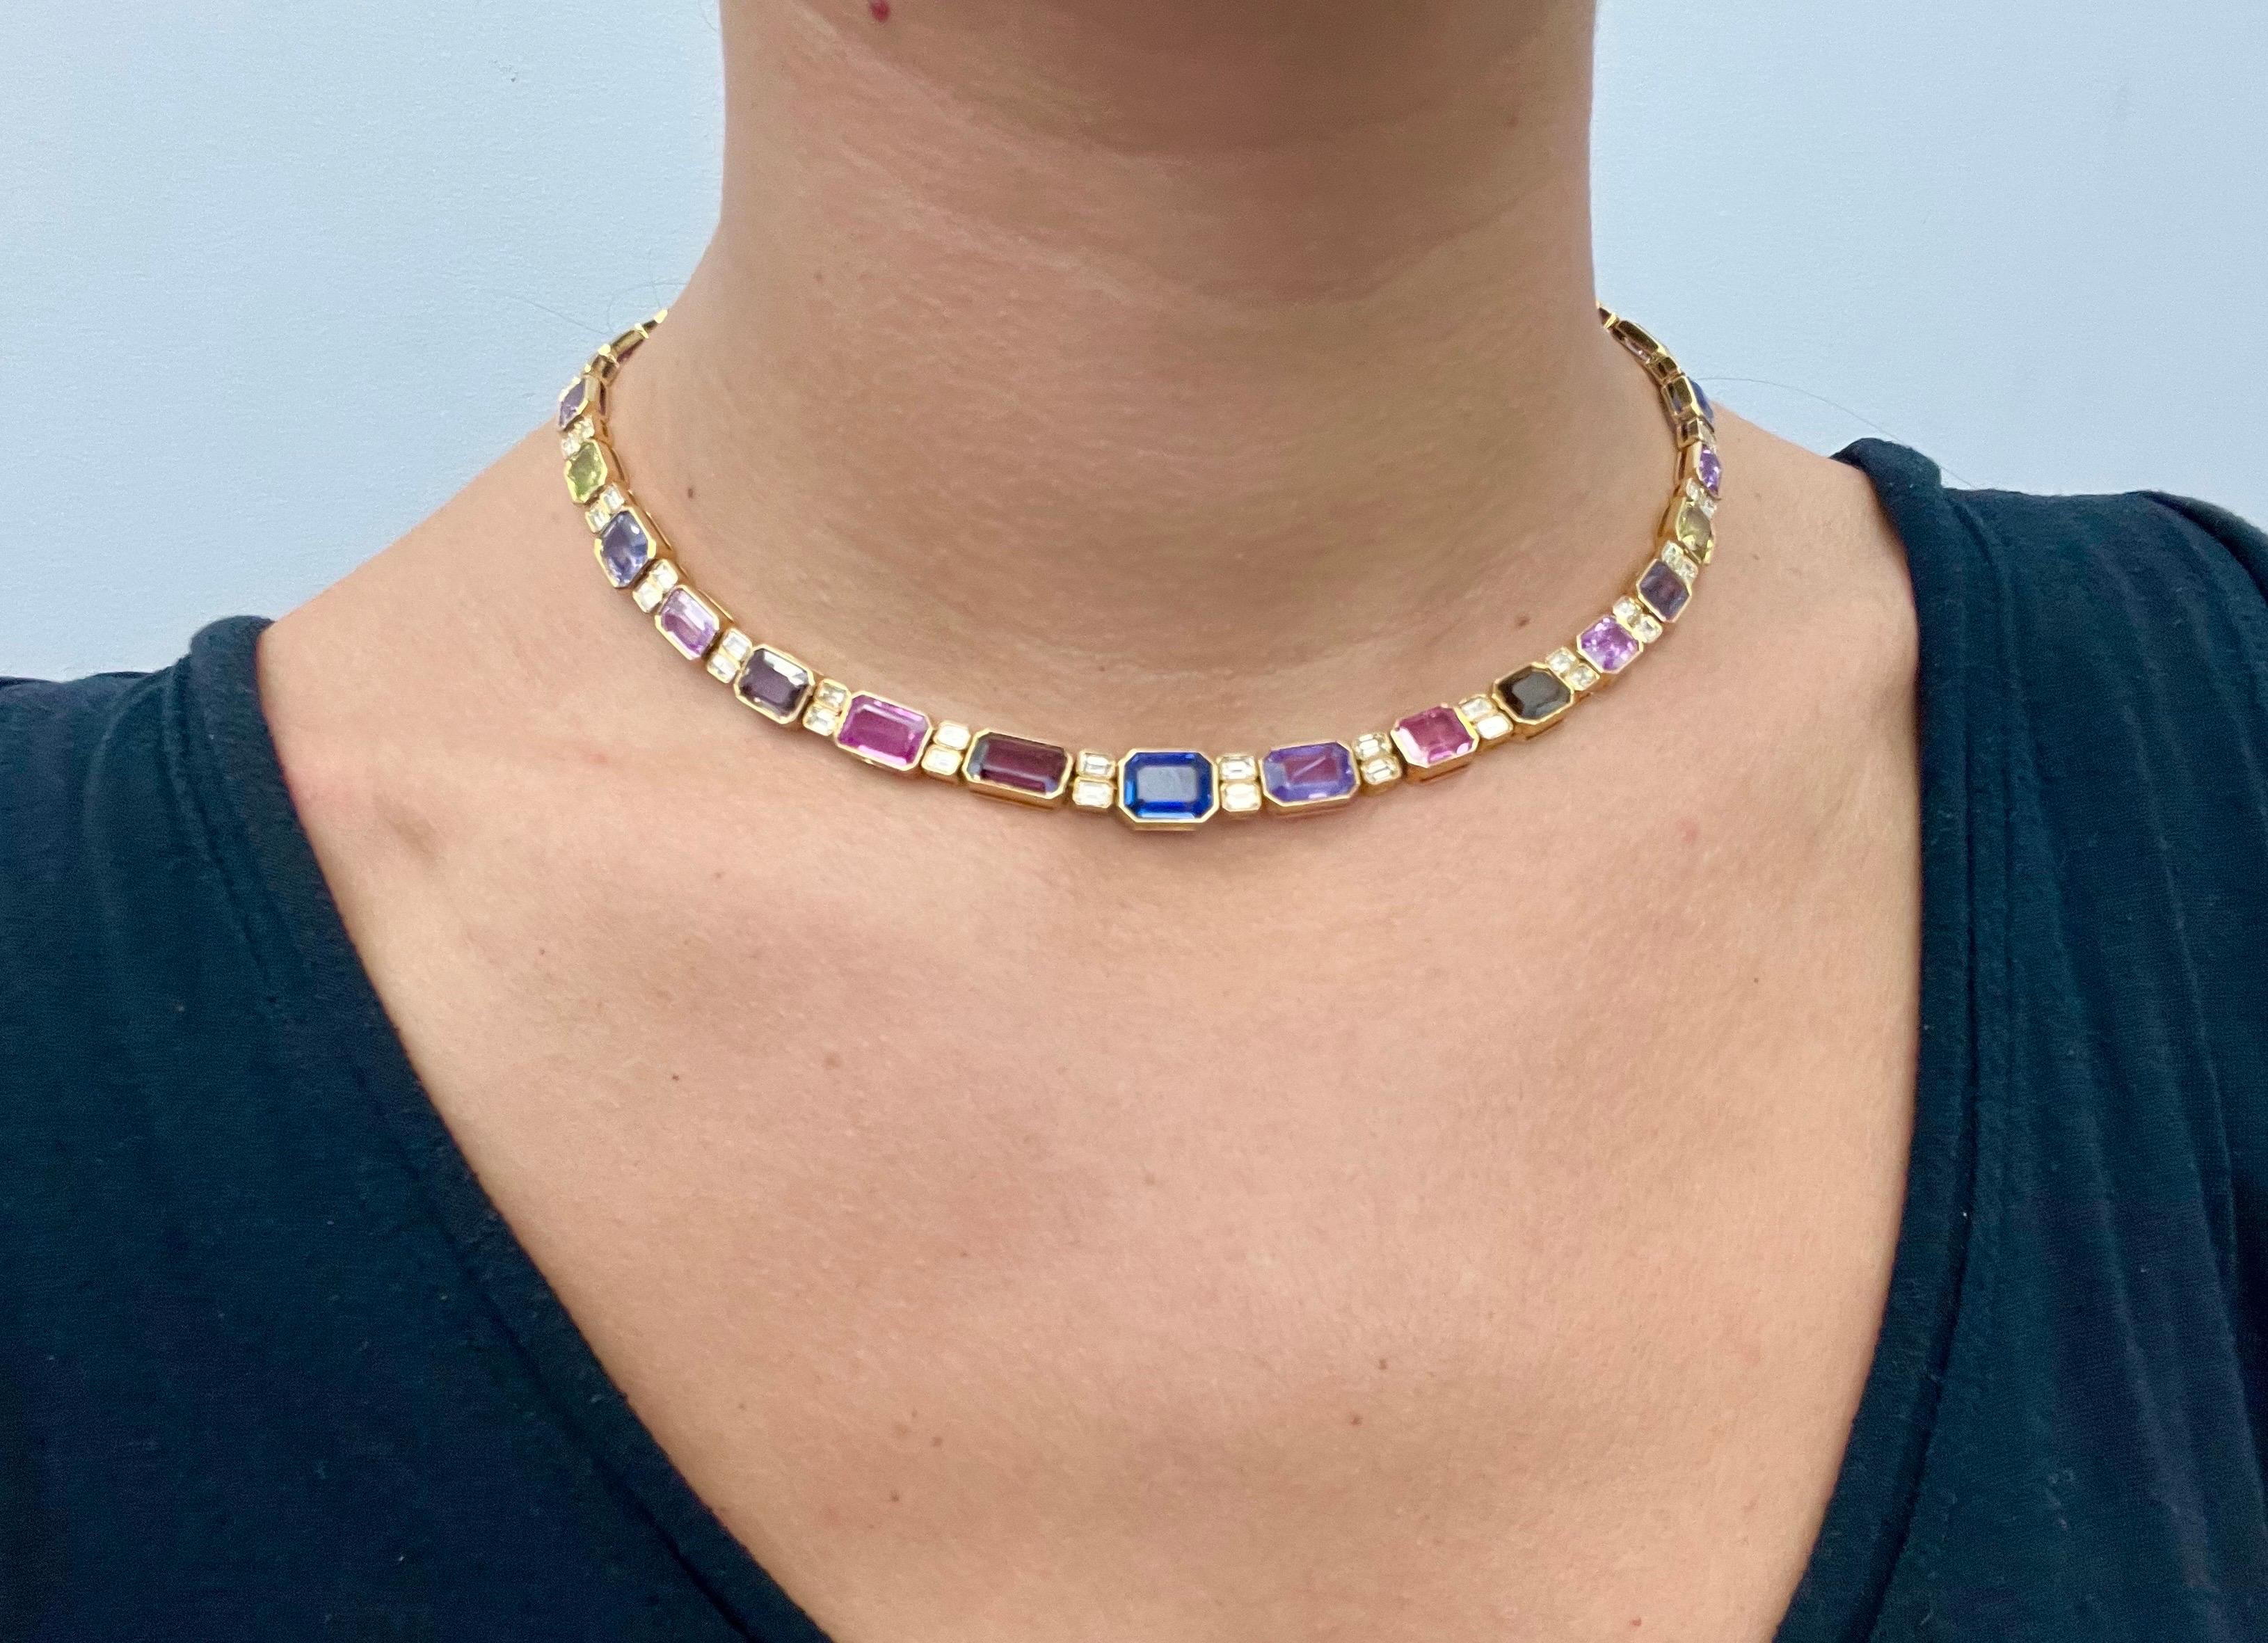 Sophia D. 56.03 Carat Multi-Color Sapphire Diamond Necklace For Sale 1